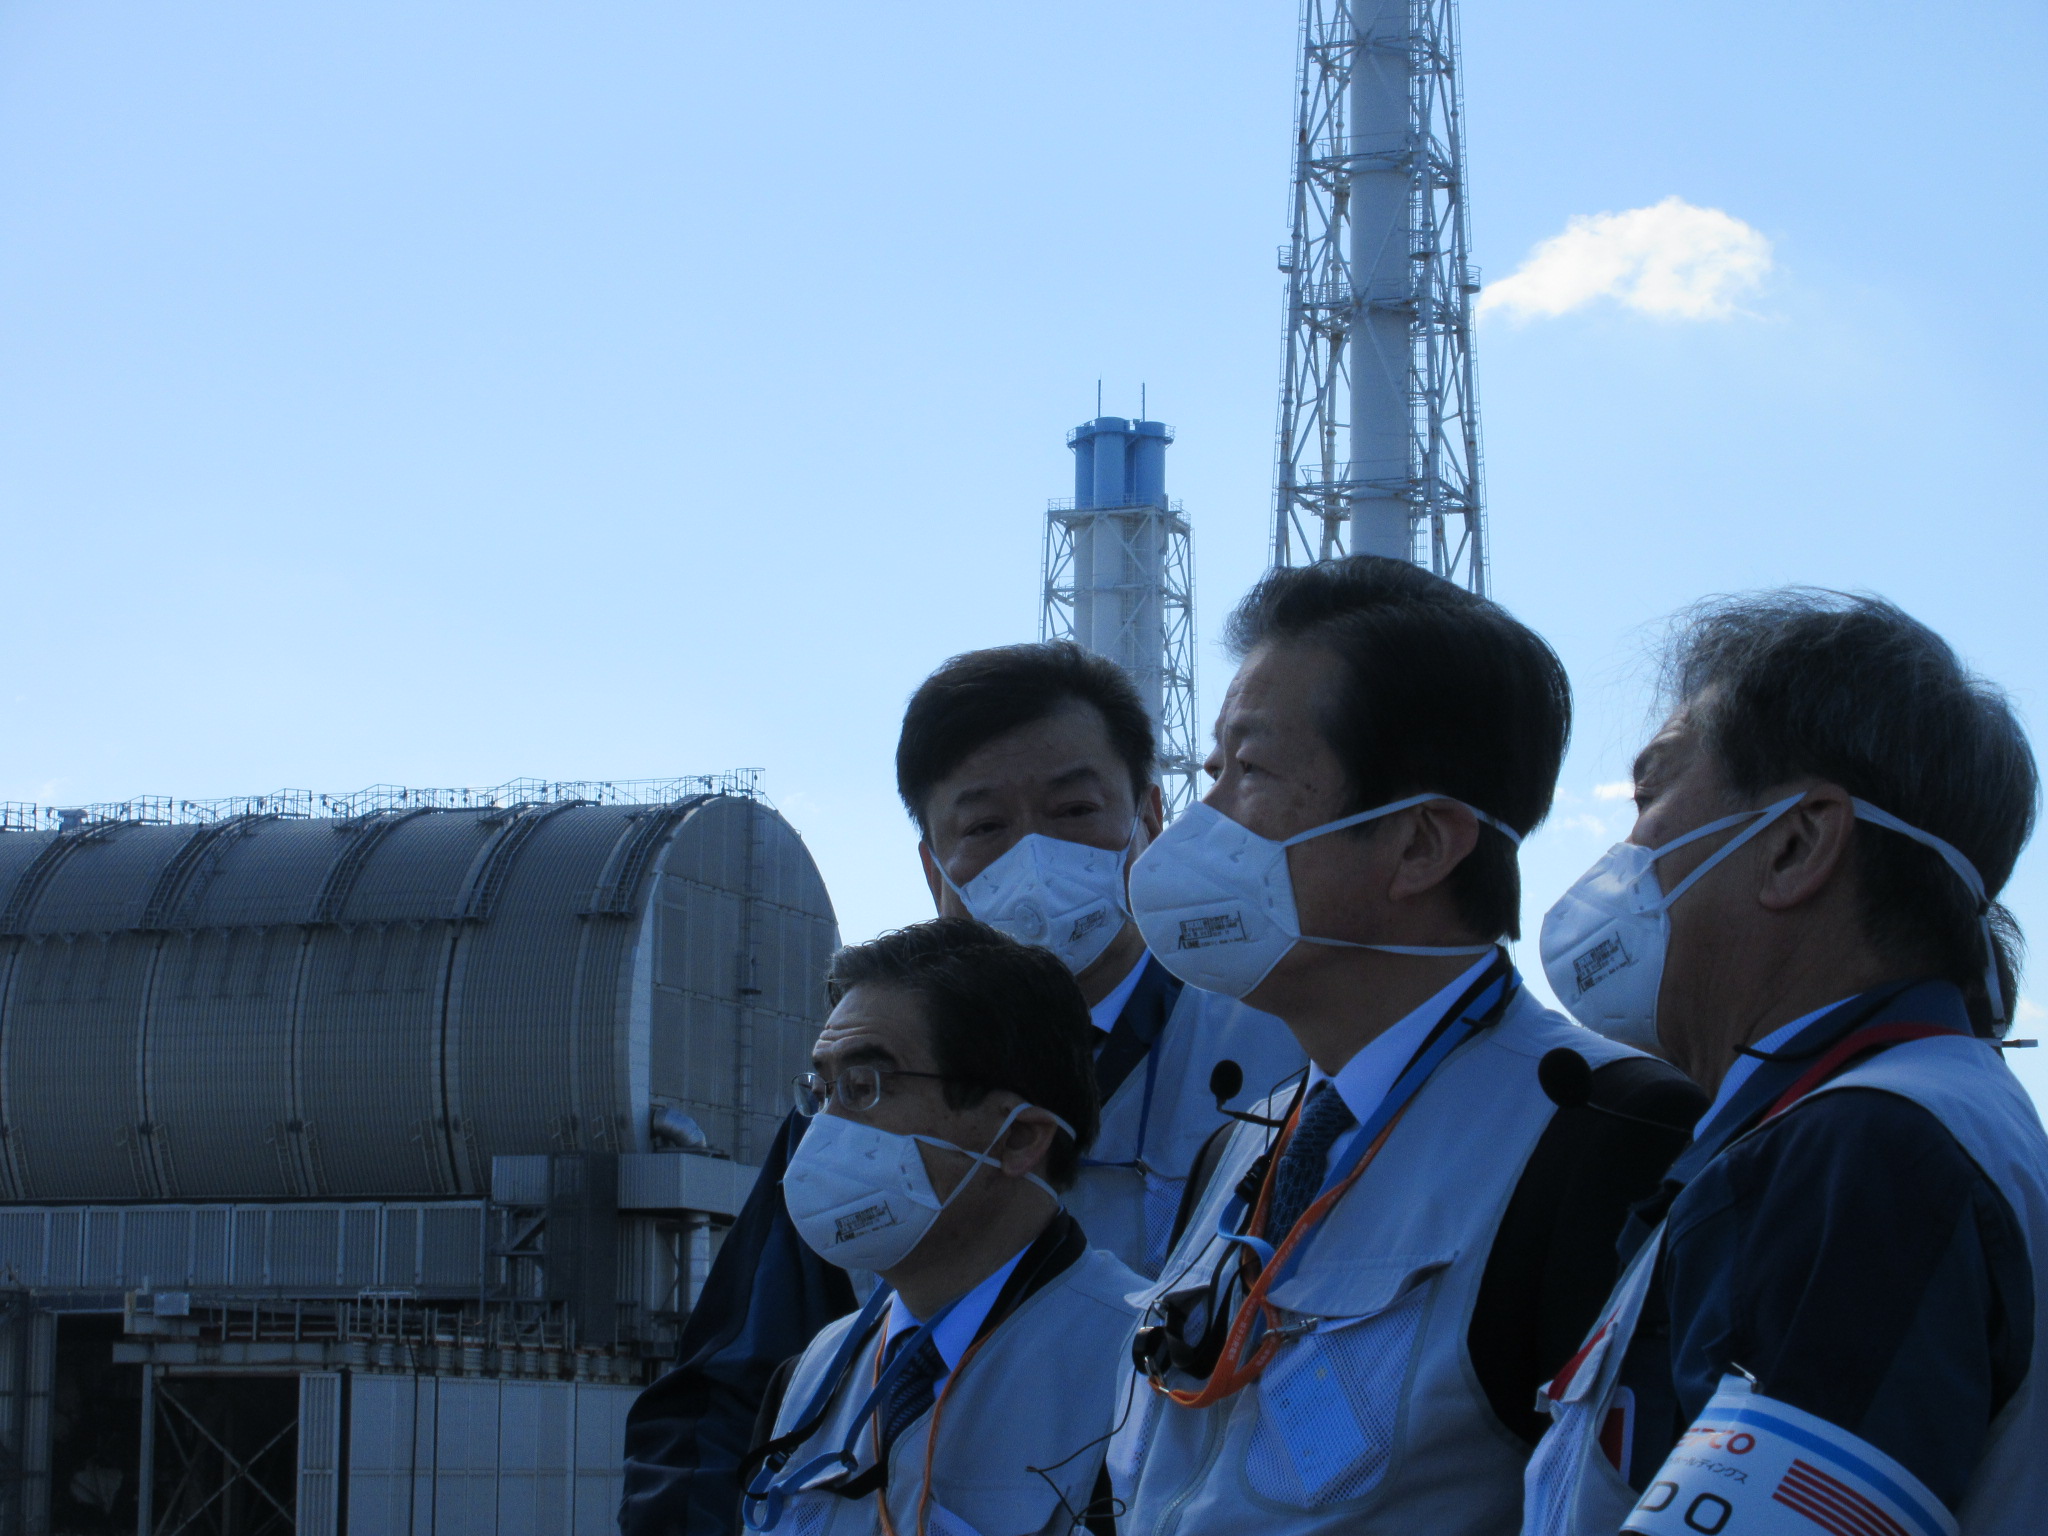 公明党 山口代表による福島第一原子力発電所ご視察について